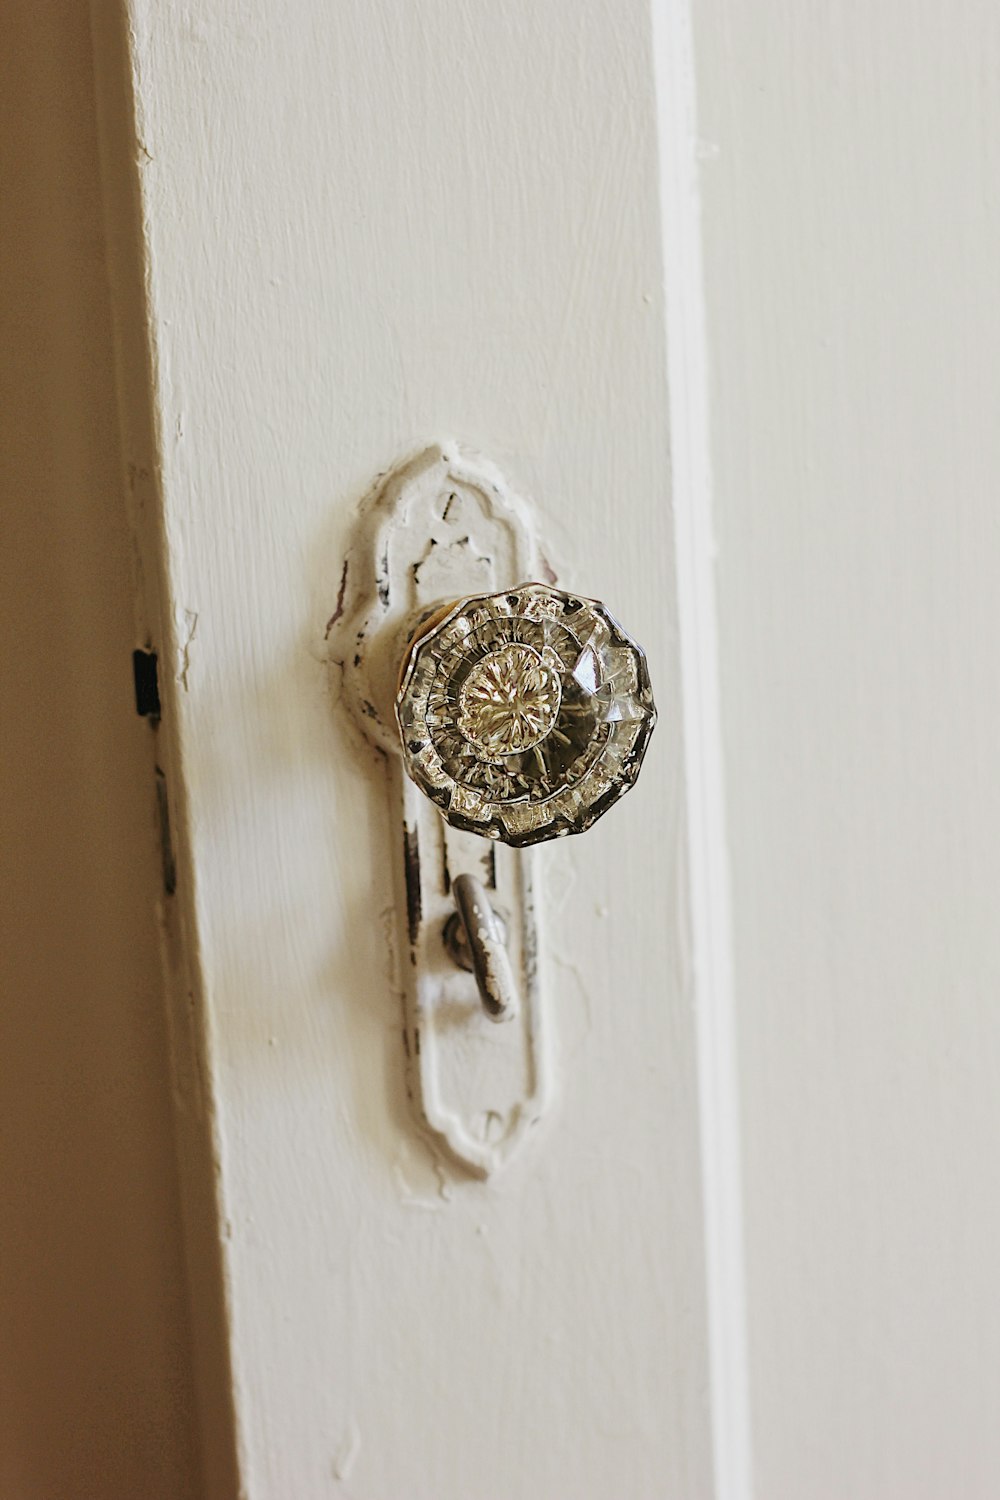 clear doorknob